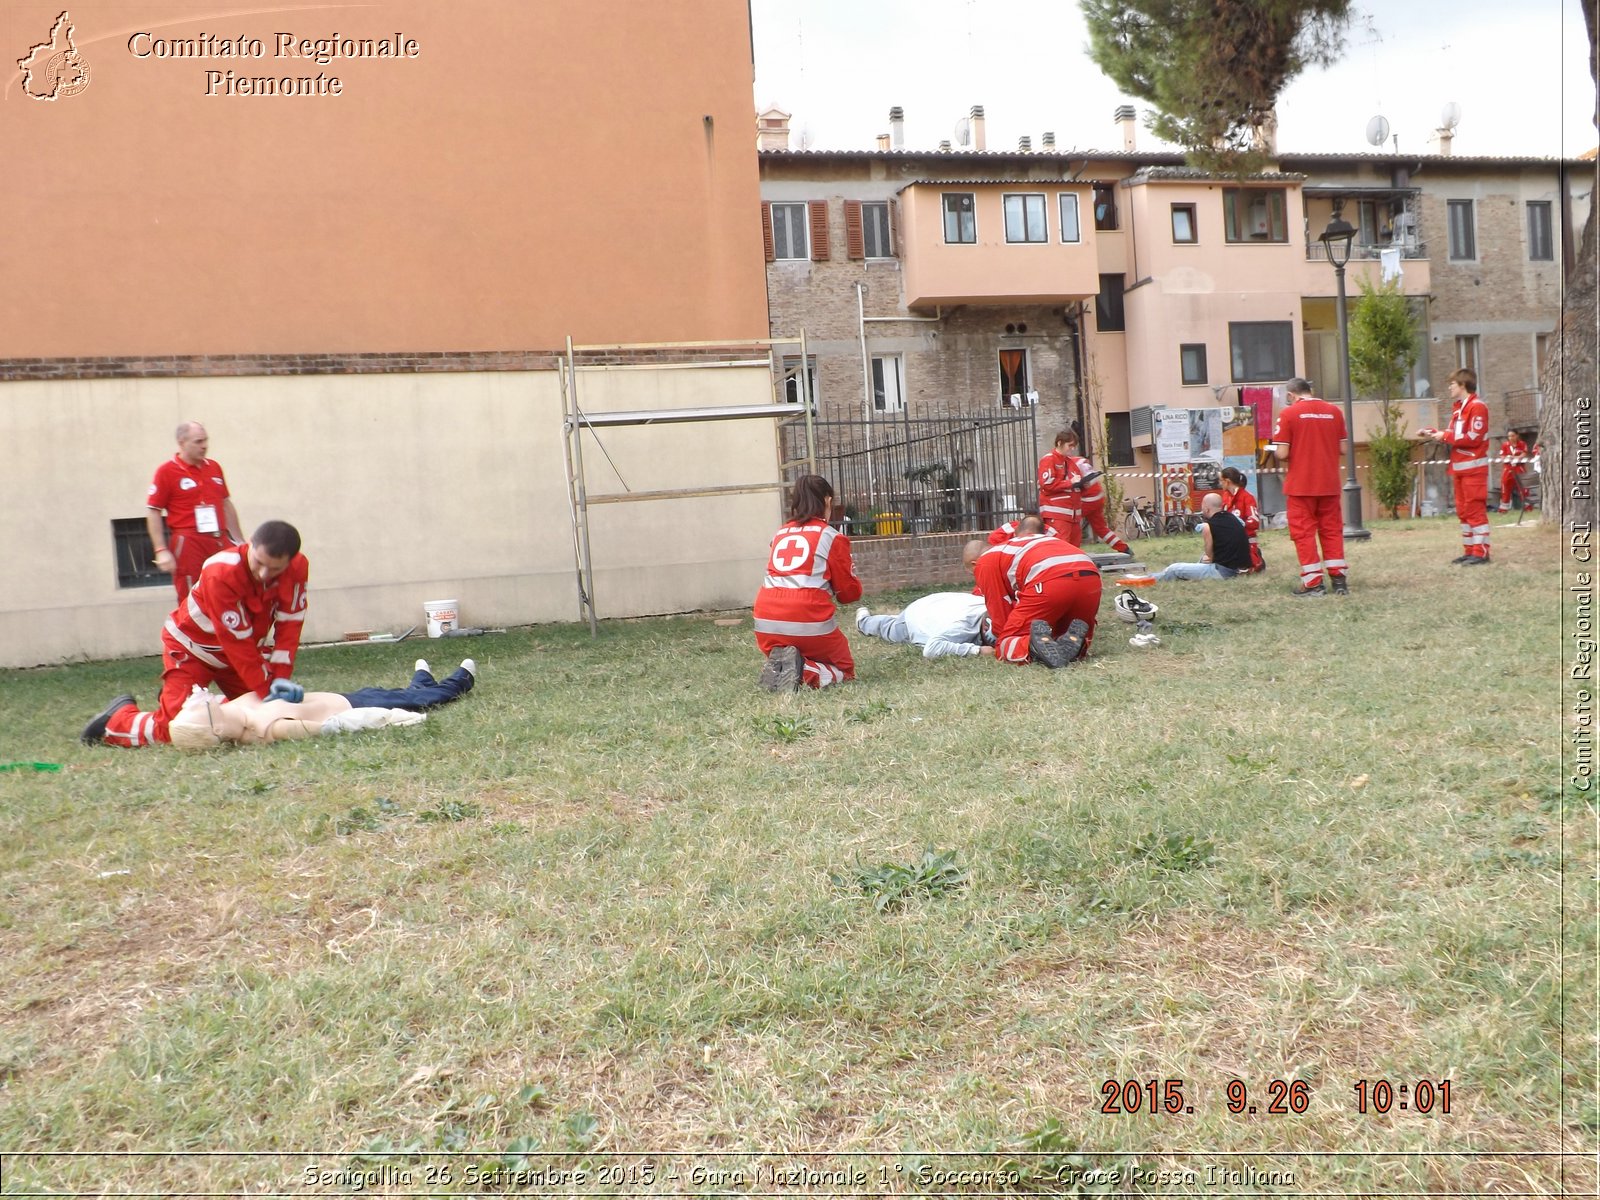 Senigallia 26 Settembre 2015 - Gara Nazionale 1 Soccorso - Croce Rossa Italiana- Comitato Regionale del Piemonte